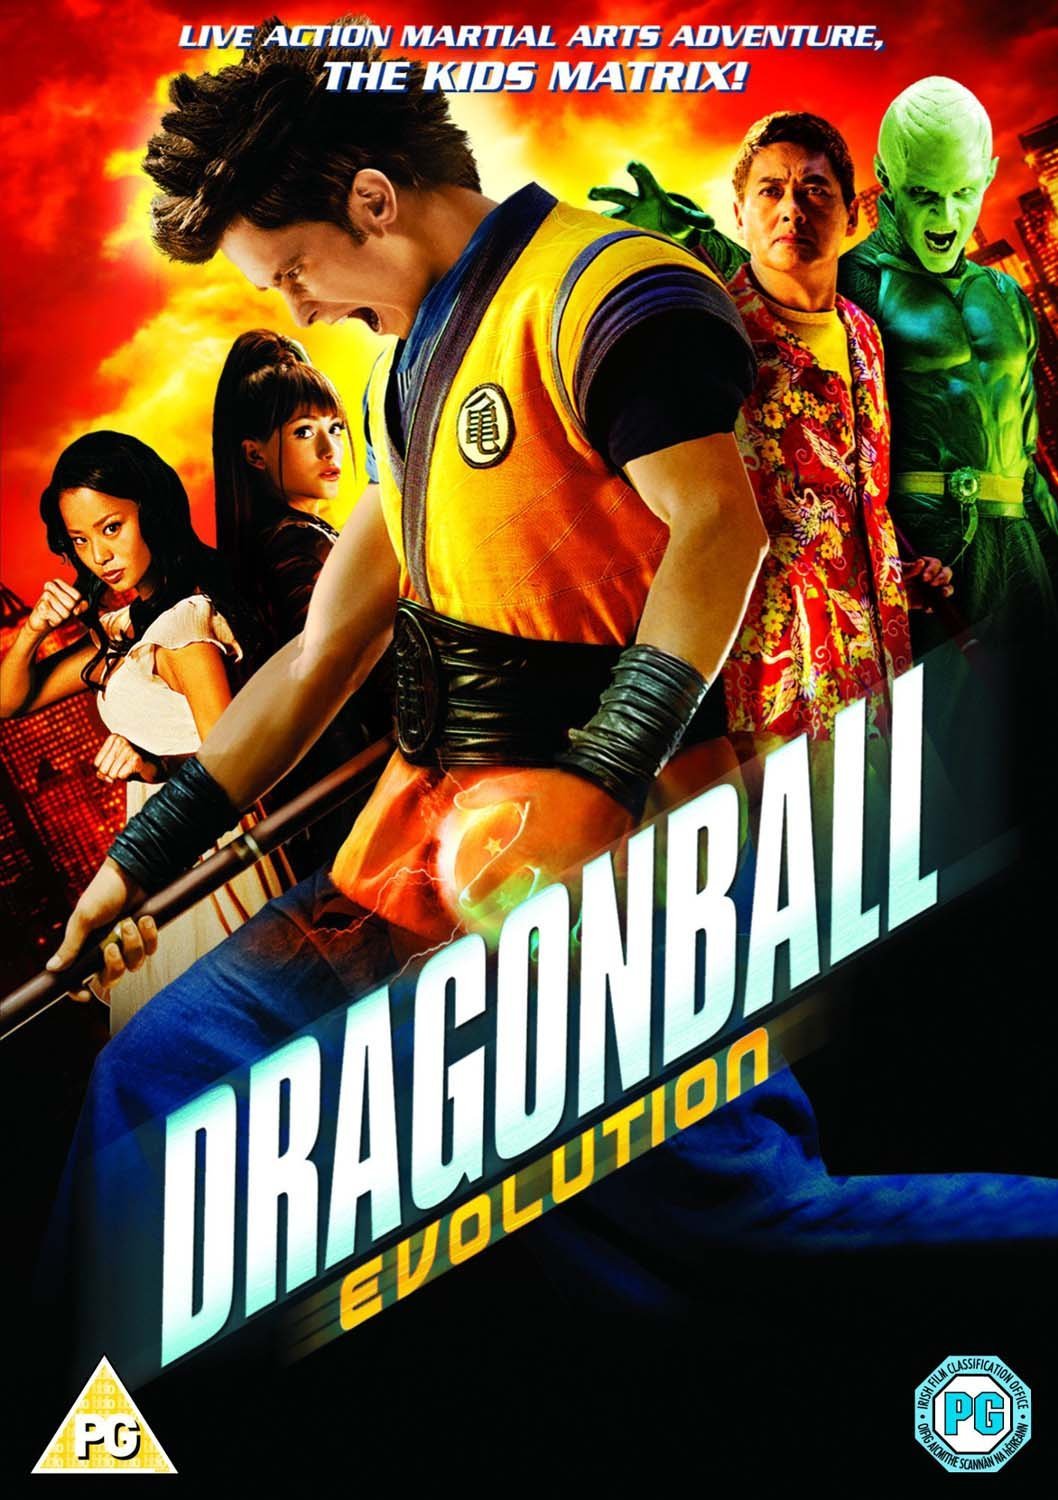 Existe um roteiro para a sequência de Dragonball Evolution